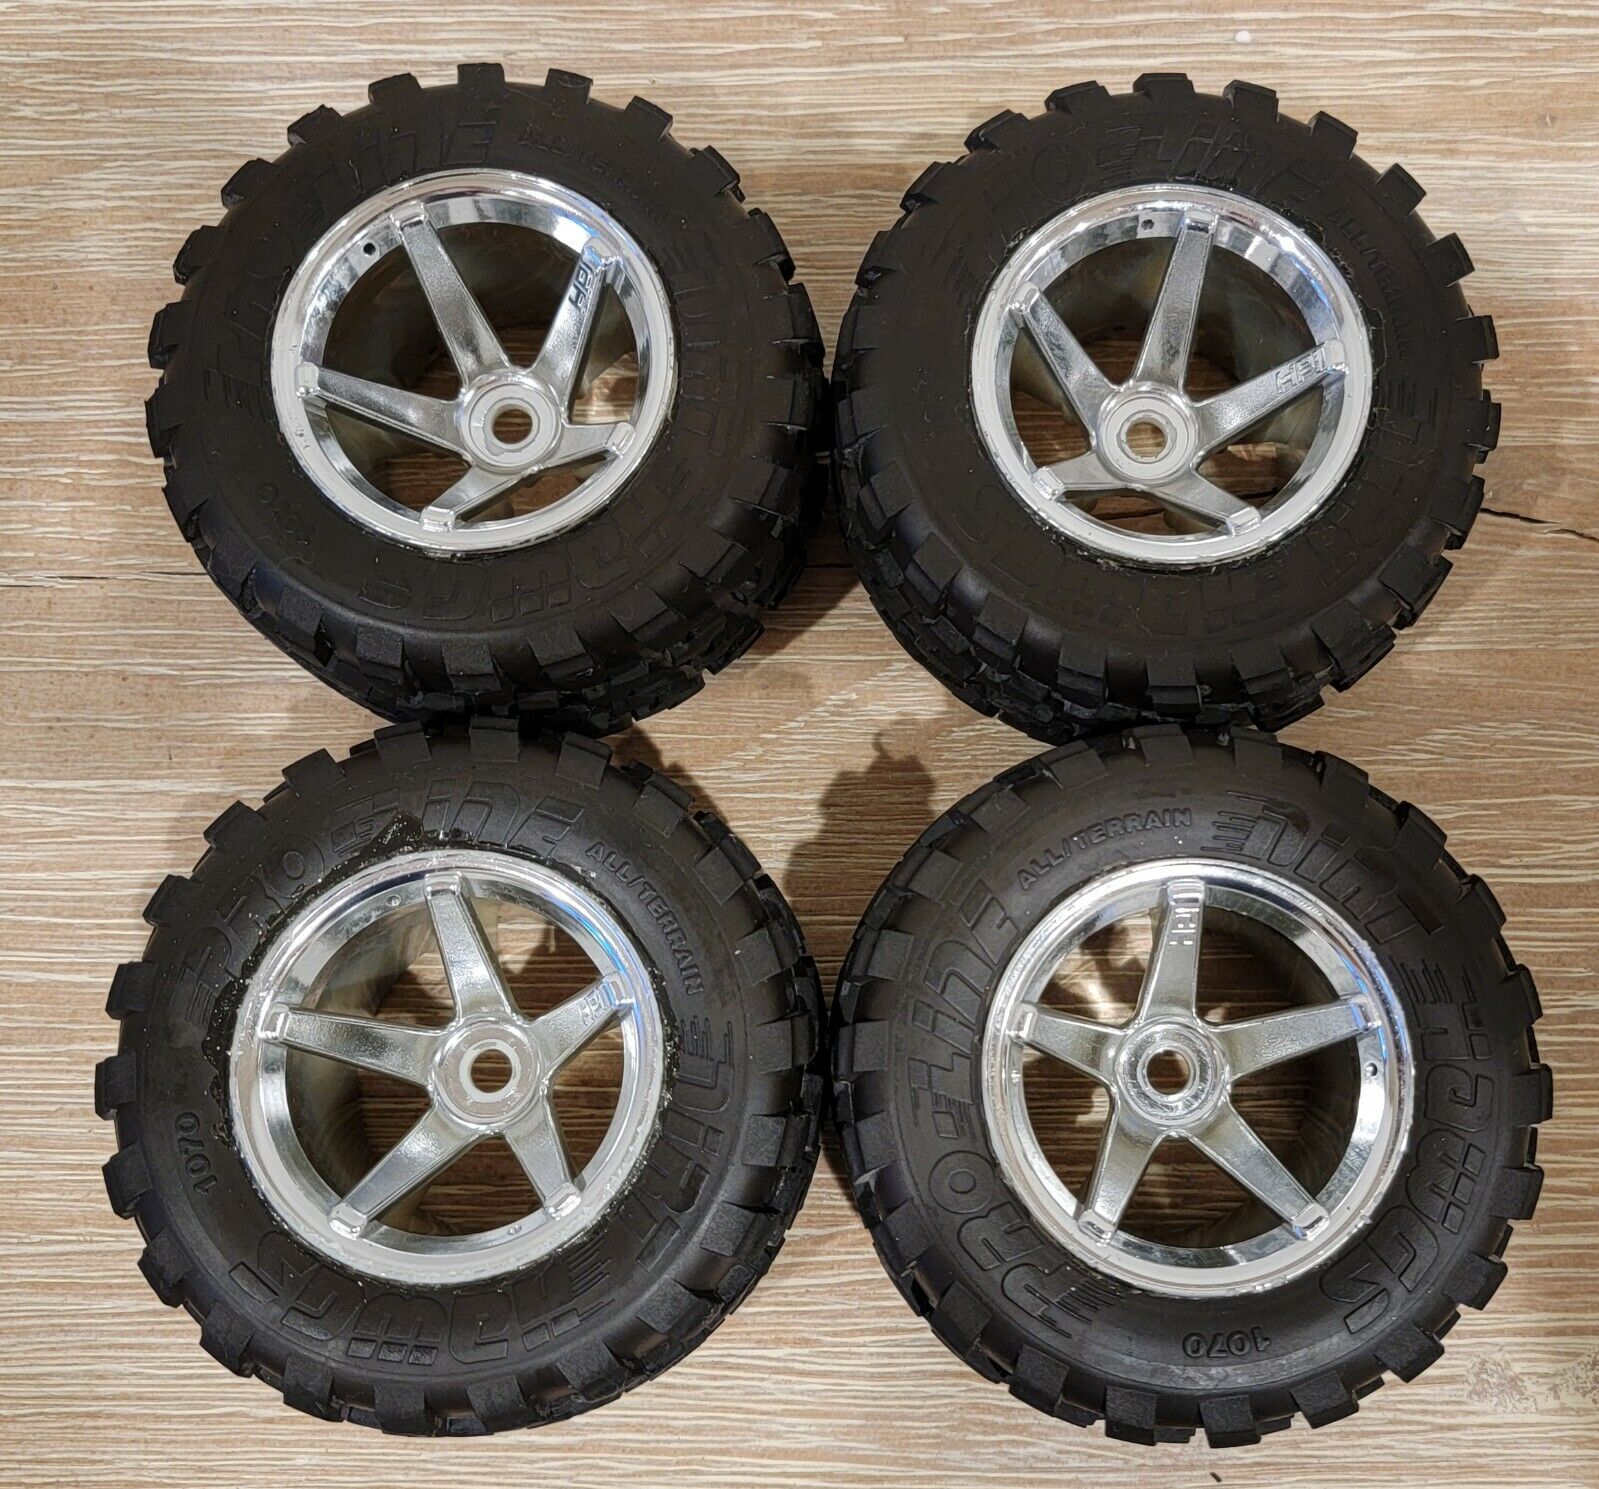 PROLINE Dirt Hawg Tires & HPI Super Star Chrome Wheels - Set of 4, Hex Mount